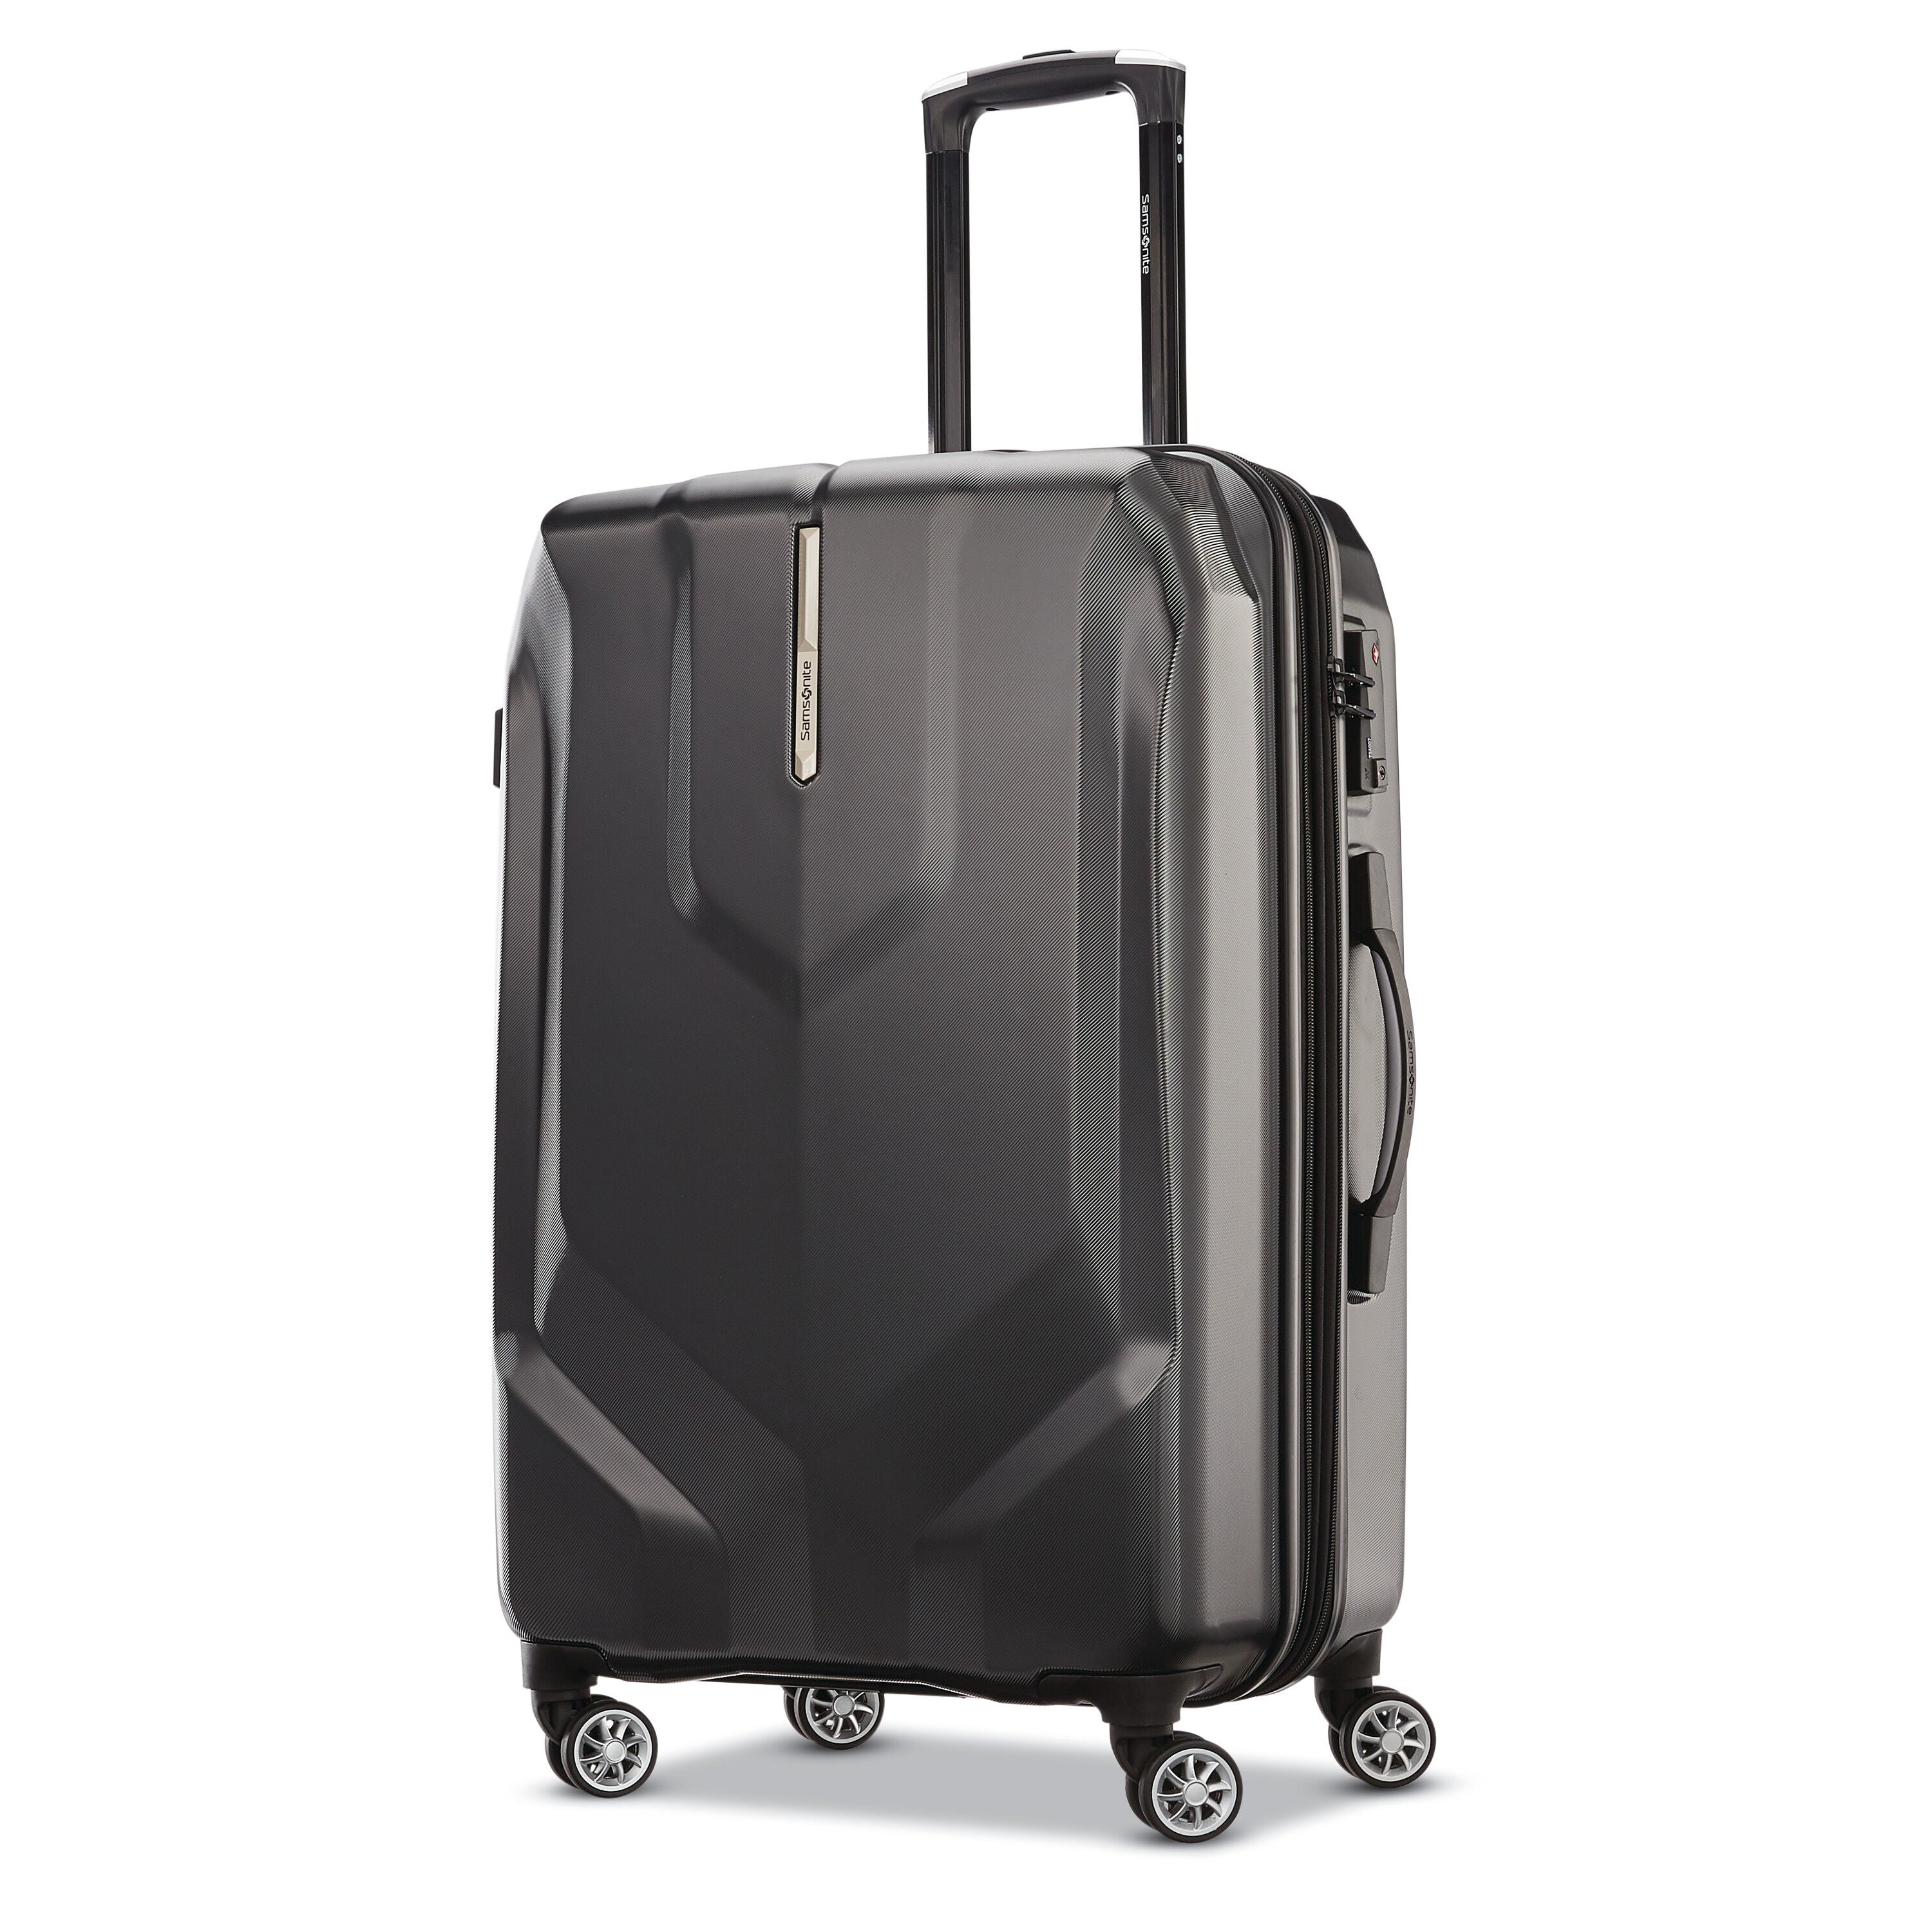 Samsonite Opto PC 2 Hardside Luggage (MEDIUM)